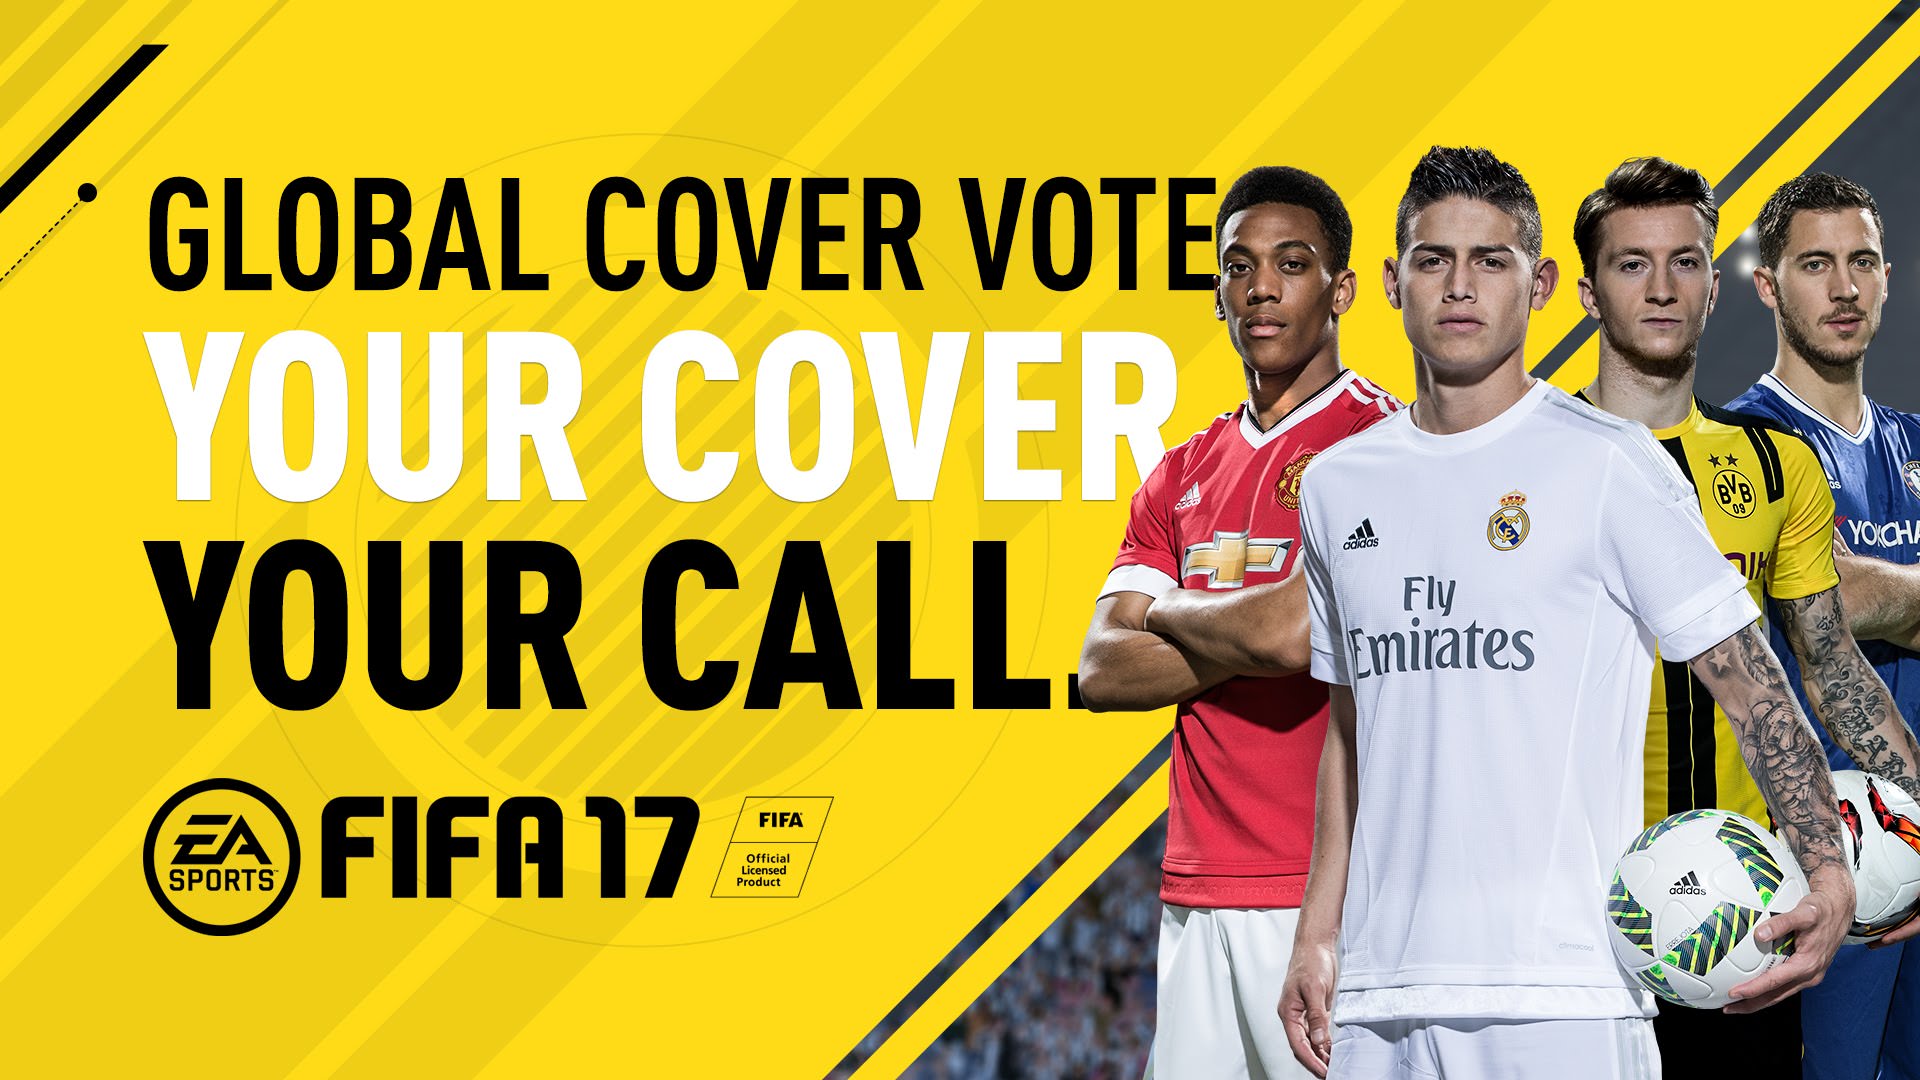 FIFA 17 – FIFPlay